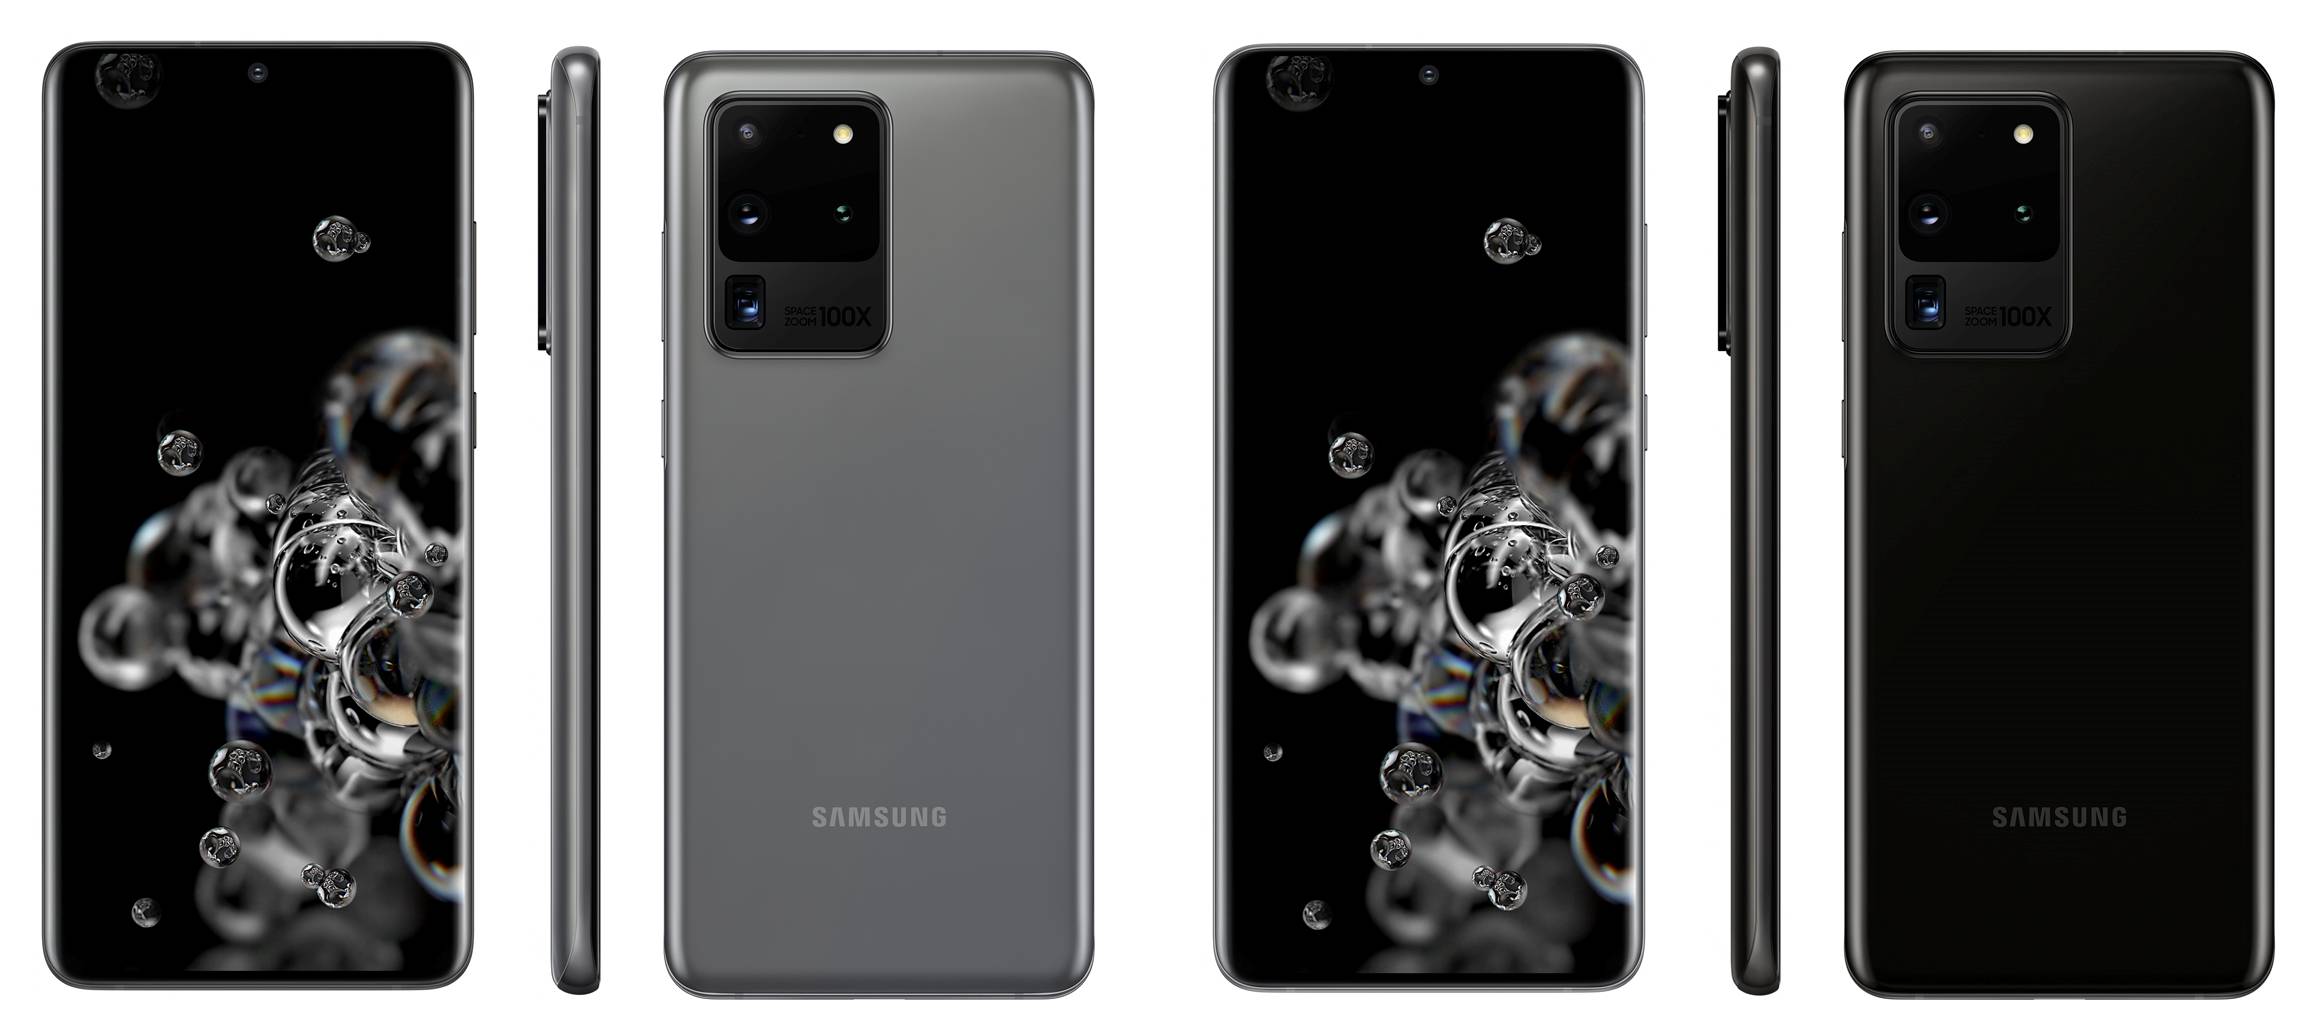 Samsung GALAXY S20 Ultra imagini oficiale presa